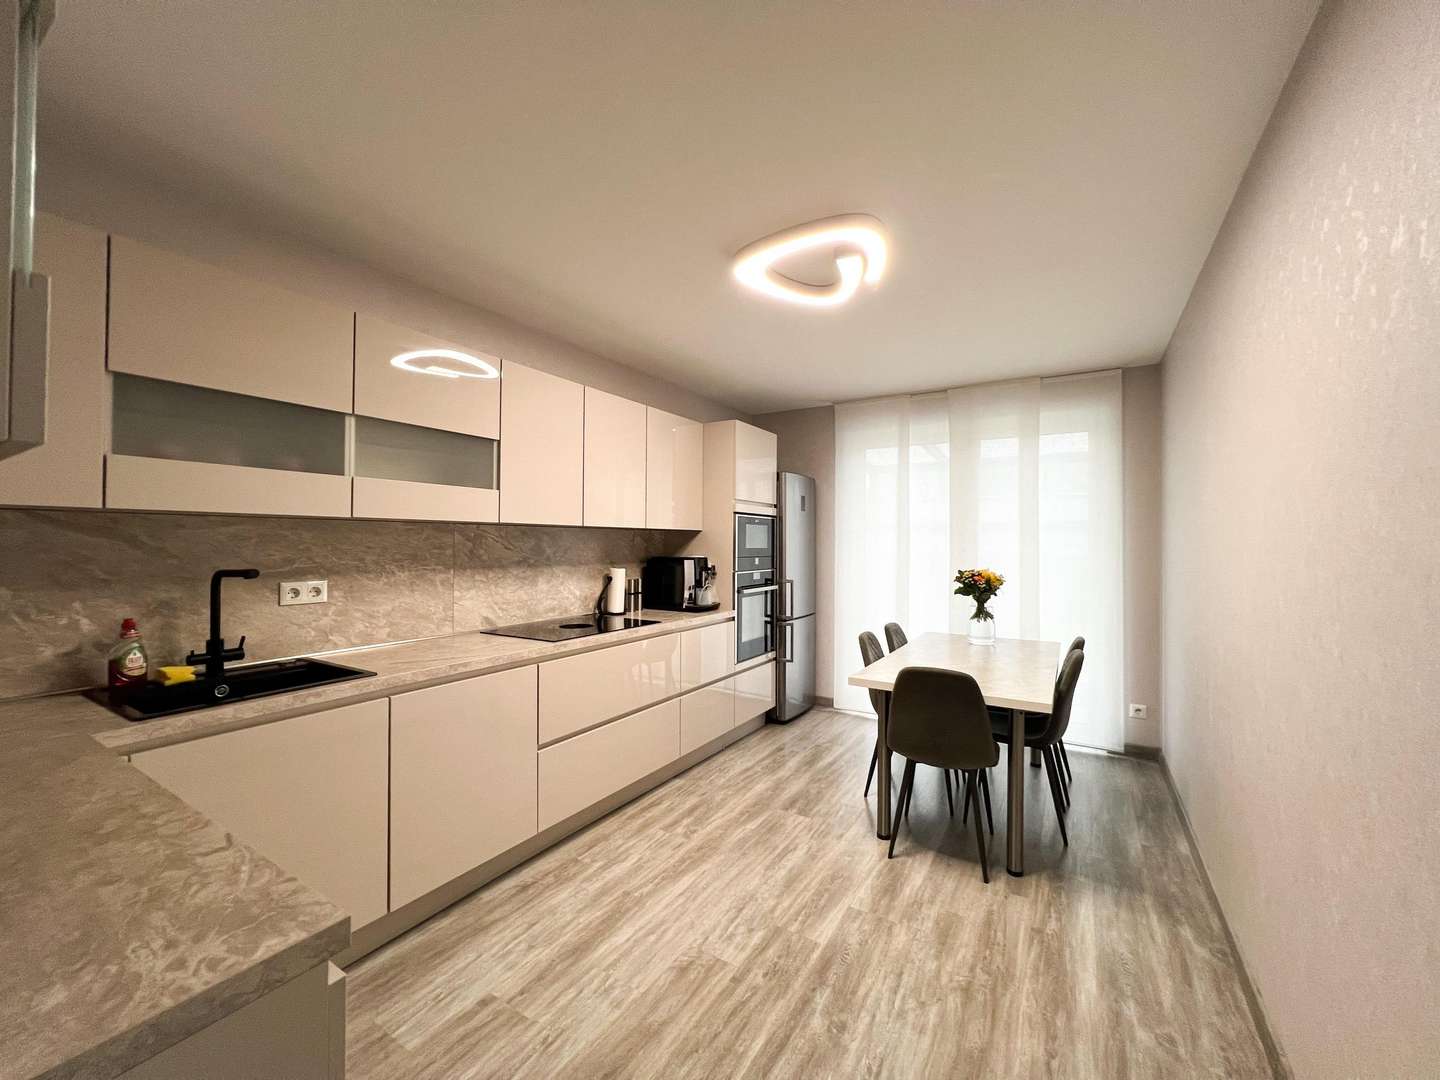 Küche - Einfamilienhaus in 58675 Hemer mit 180m² kaufen